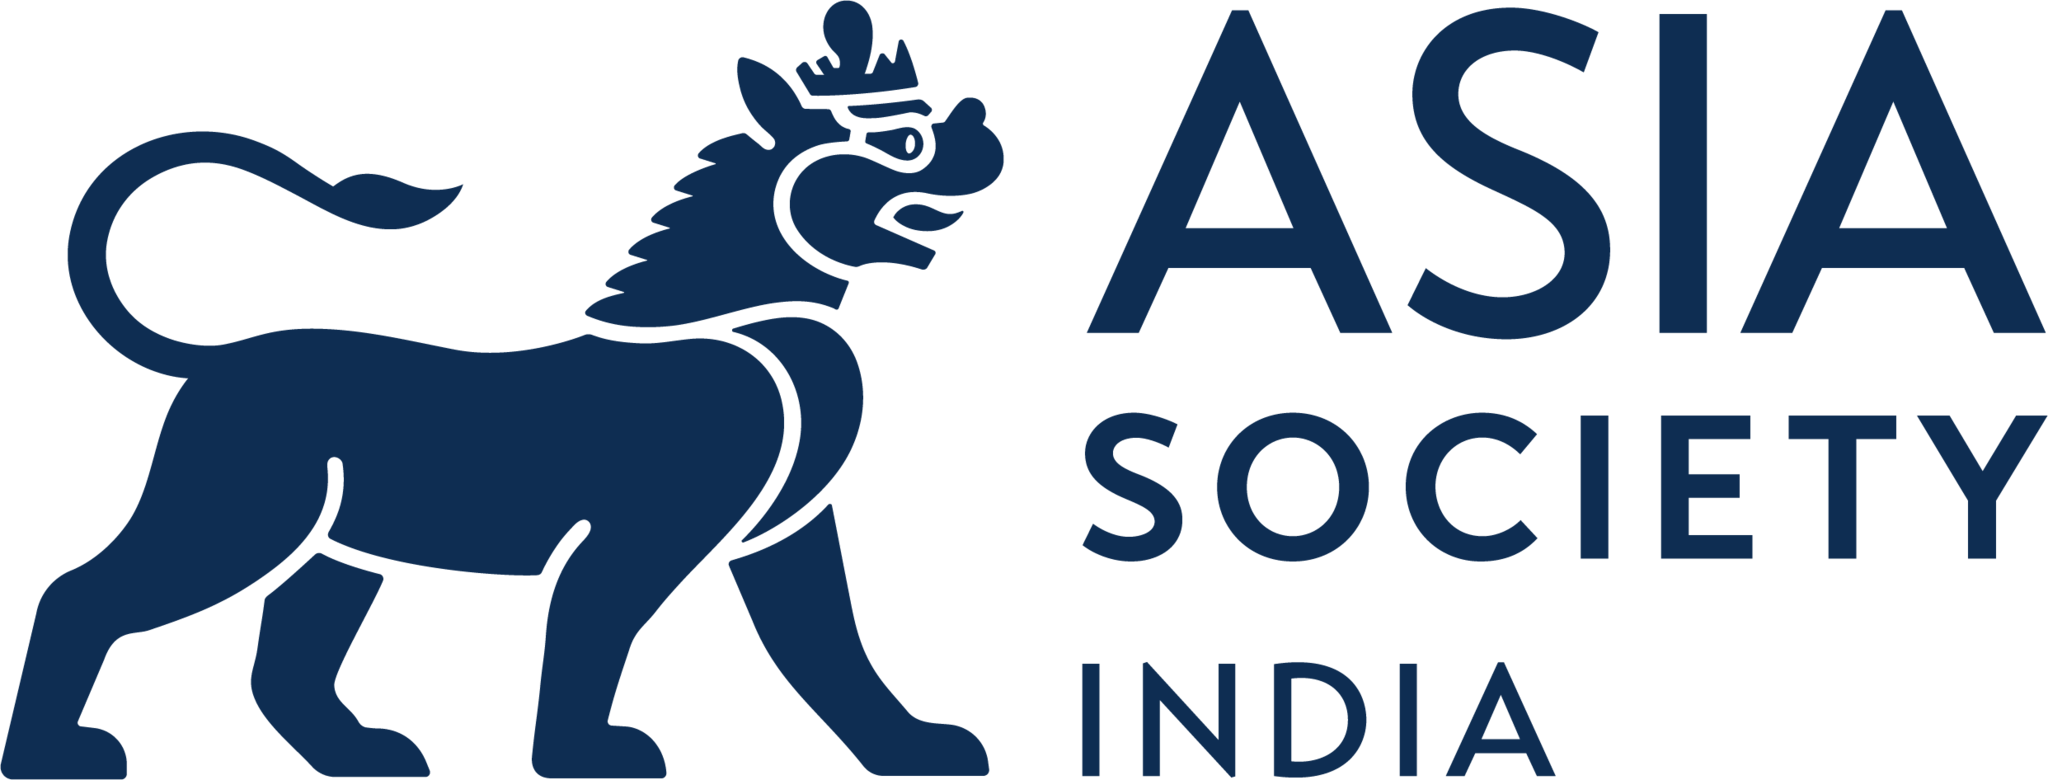 Asia Society India Centre